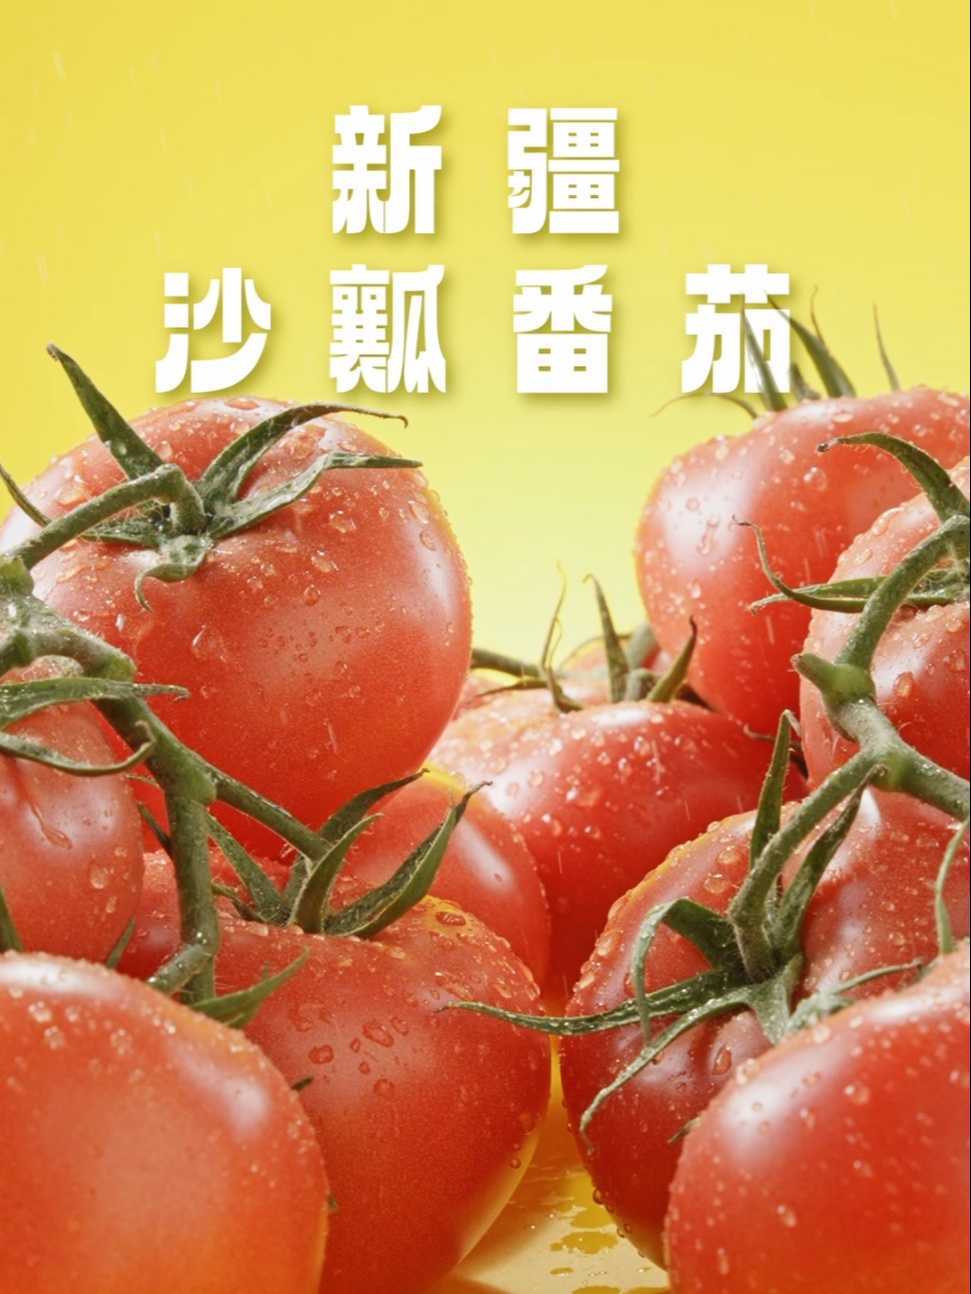 爱嗦番茄味螺蛳粉电商广告